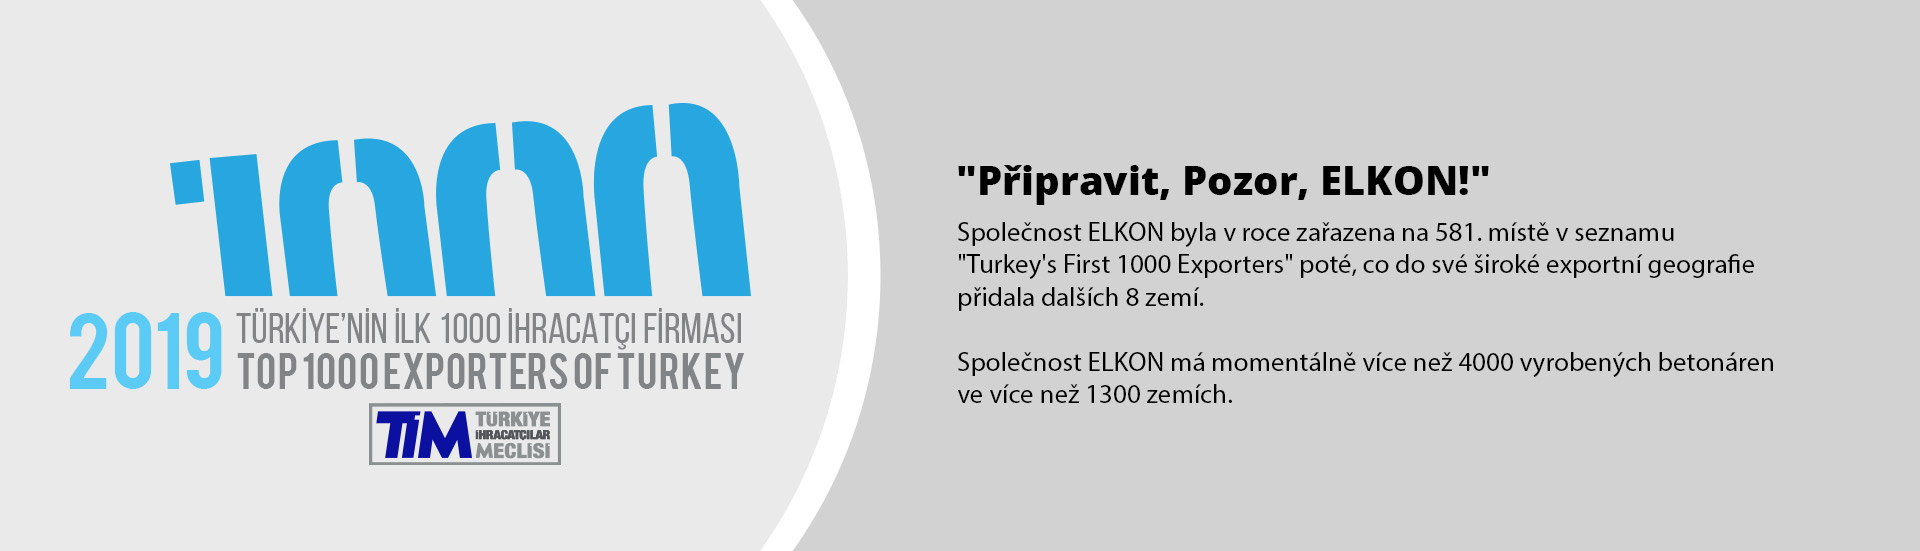 Připravit, Pozor, ELKON – 581. Místo v “ Prvních 1000 Vývozců Turecka 2019”